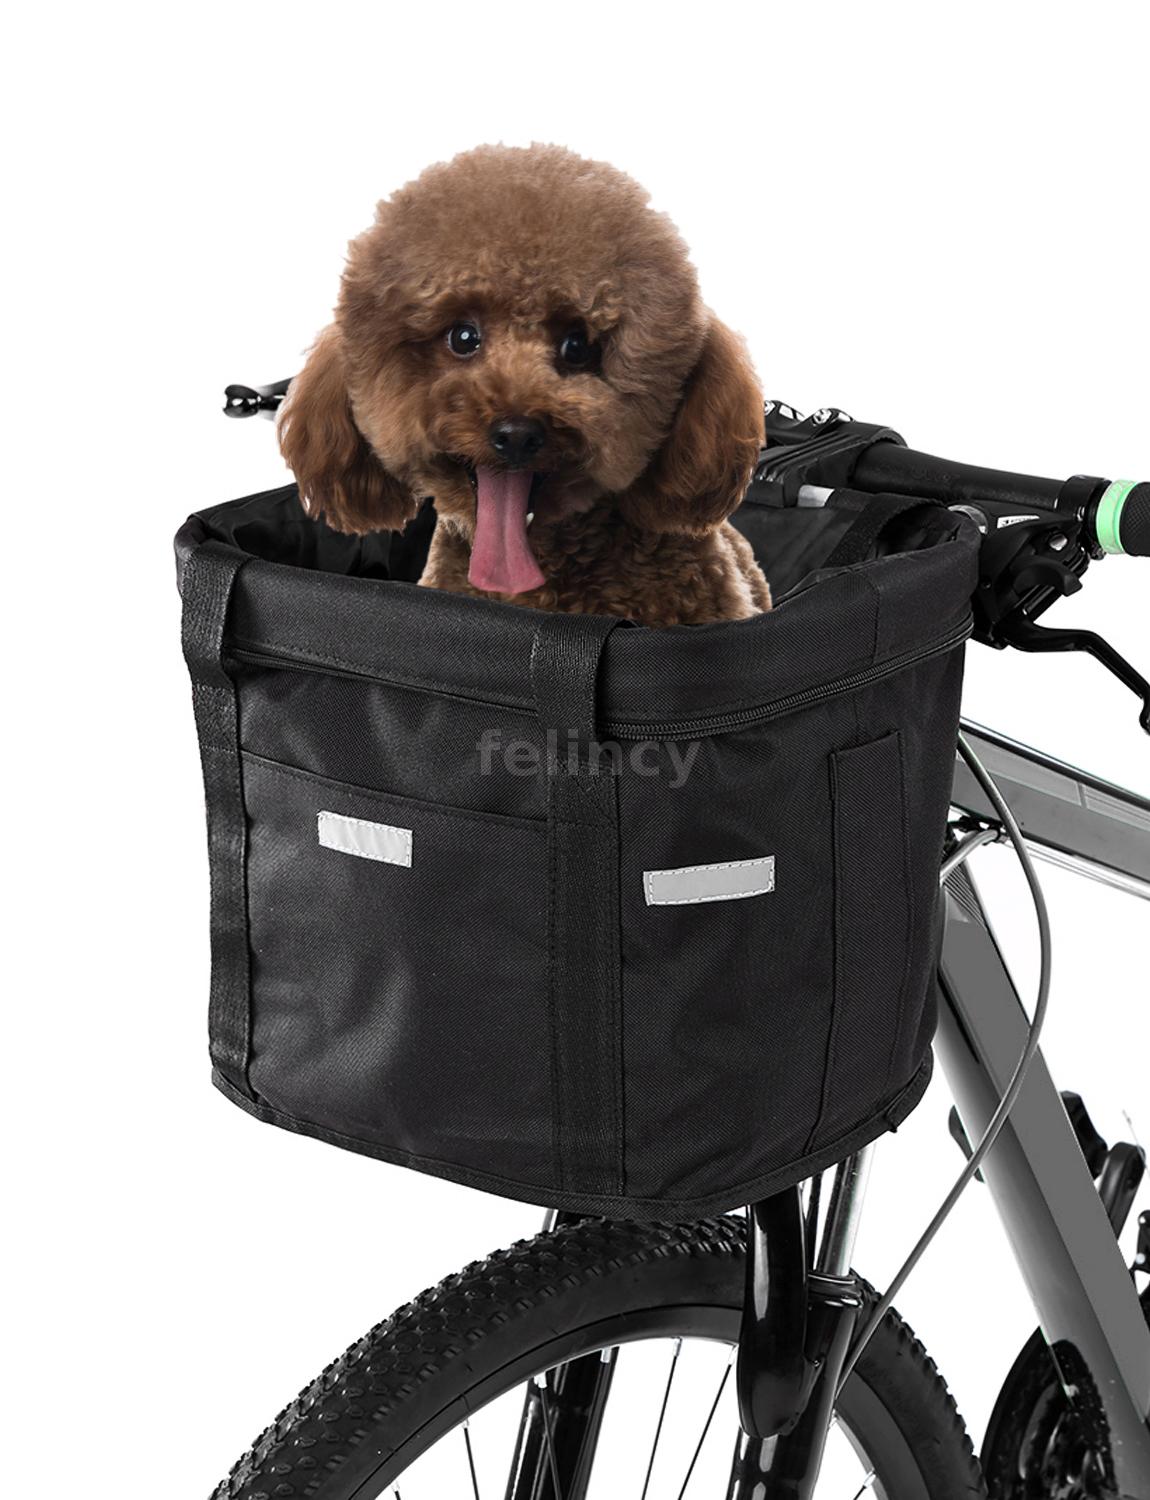 Mode faltbare Fahrrad vorne Korb Fahrrad Lenker Korb Carrier Frame Pet Bag T3H6